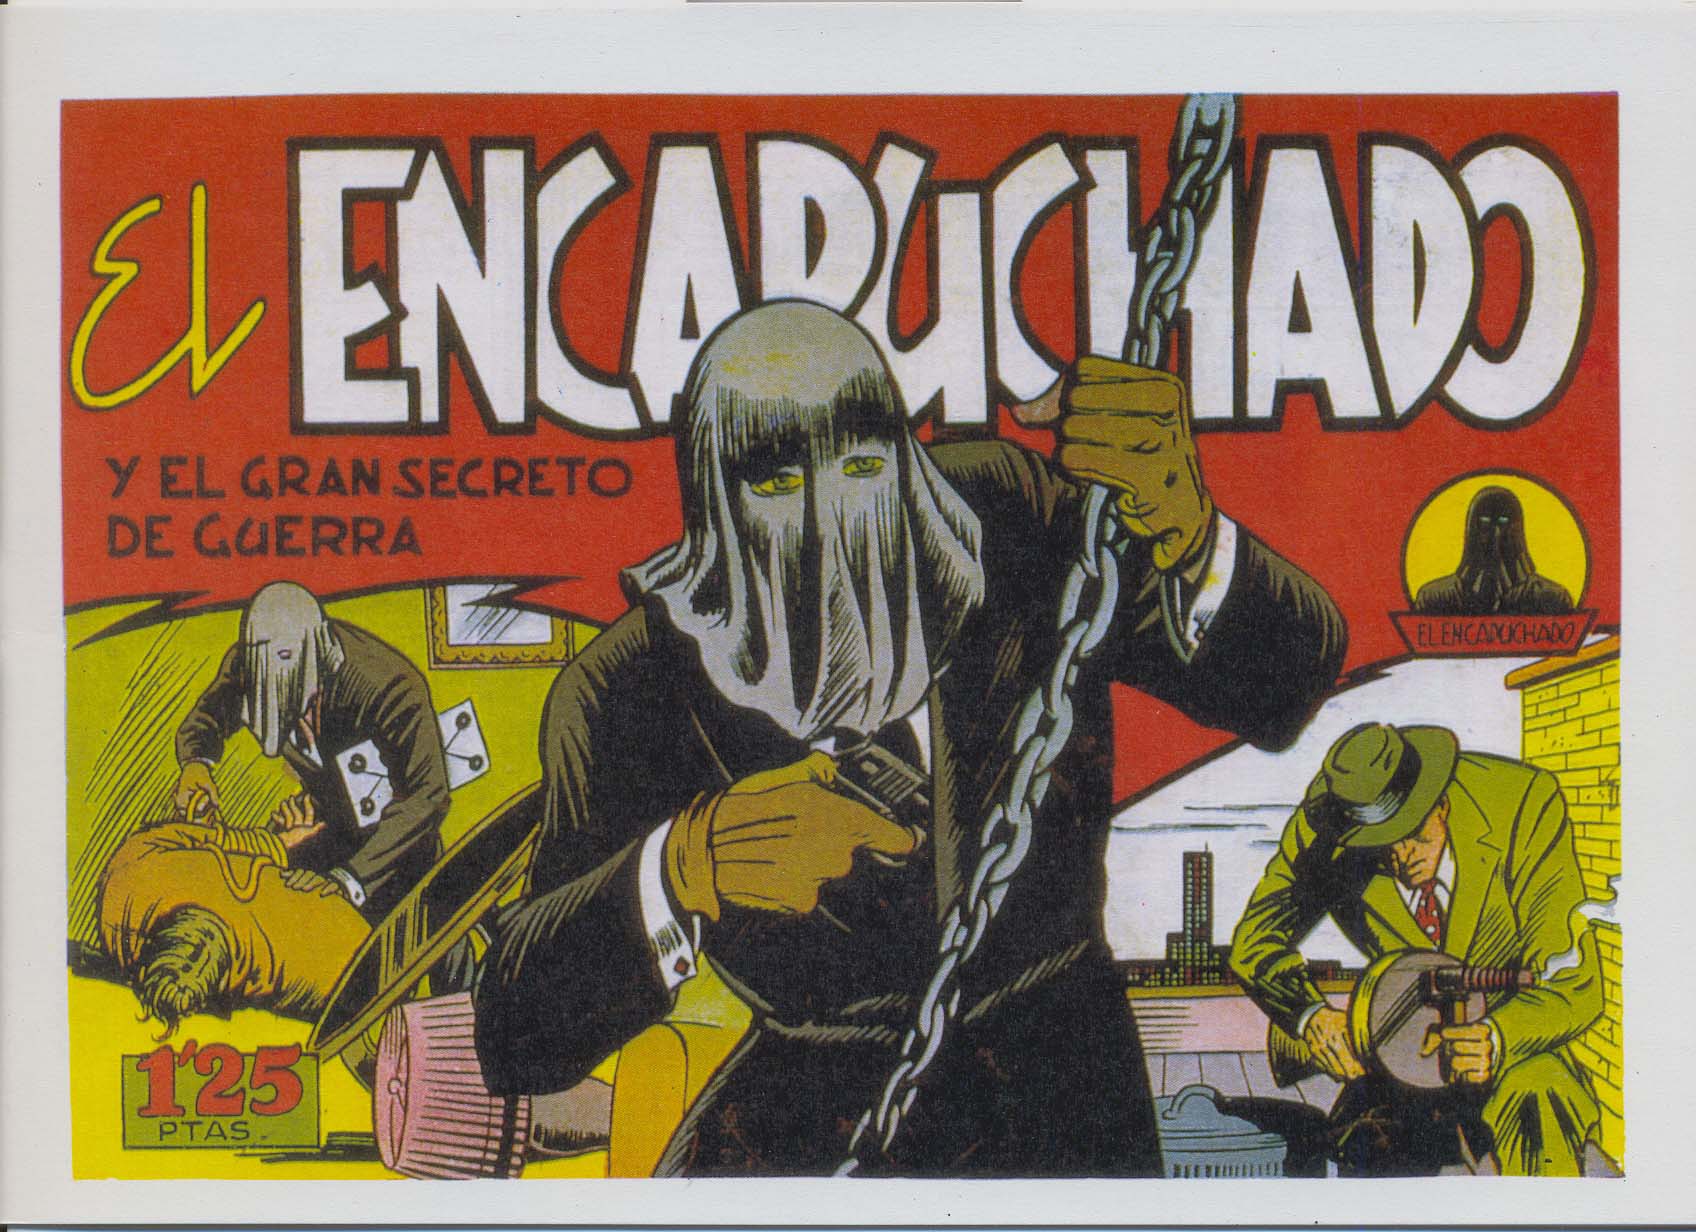 Comic Book Cover For El Encapuchado 8 - Y El Gran Secreto De Guerra